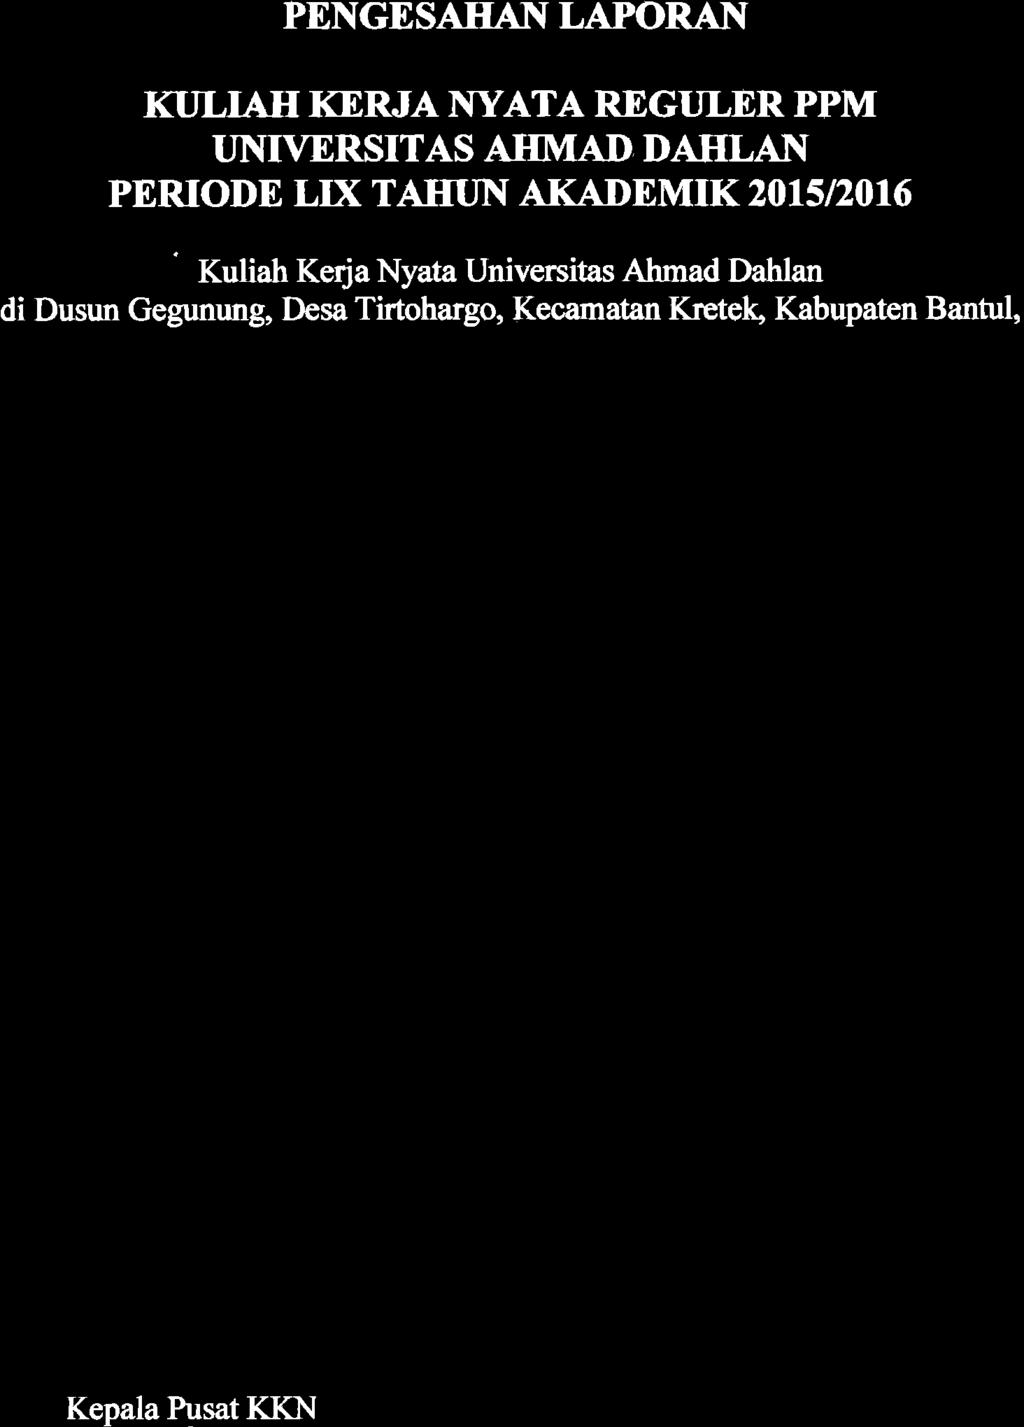 12016 ' Kuliah Kerja Nyata Universitas Ahmad Dahlan di Dusun